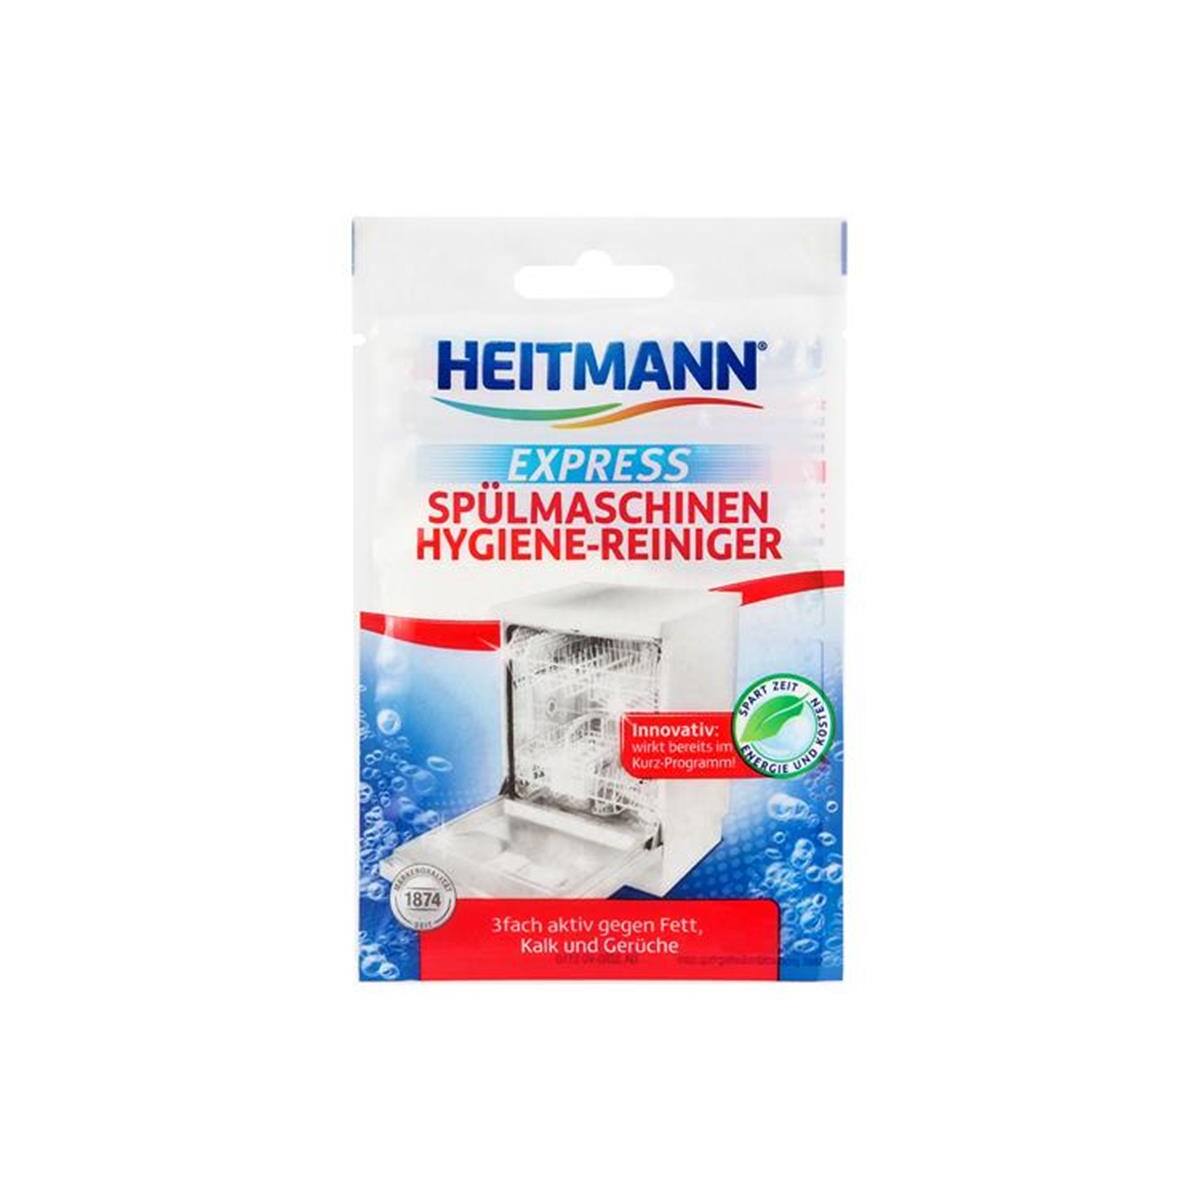 Heitmann Express Splmaschinen Hygienereniger 30g